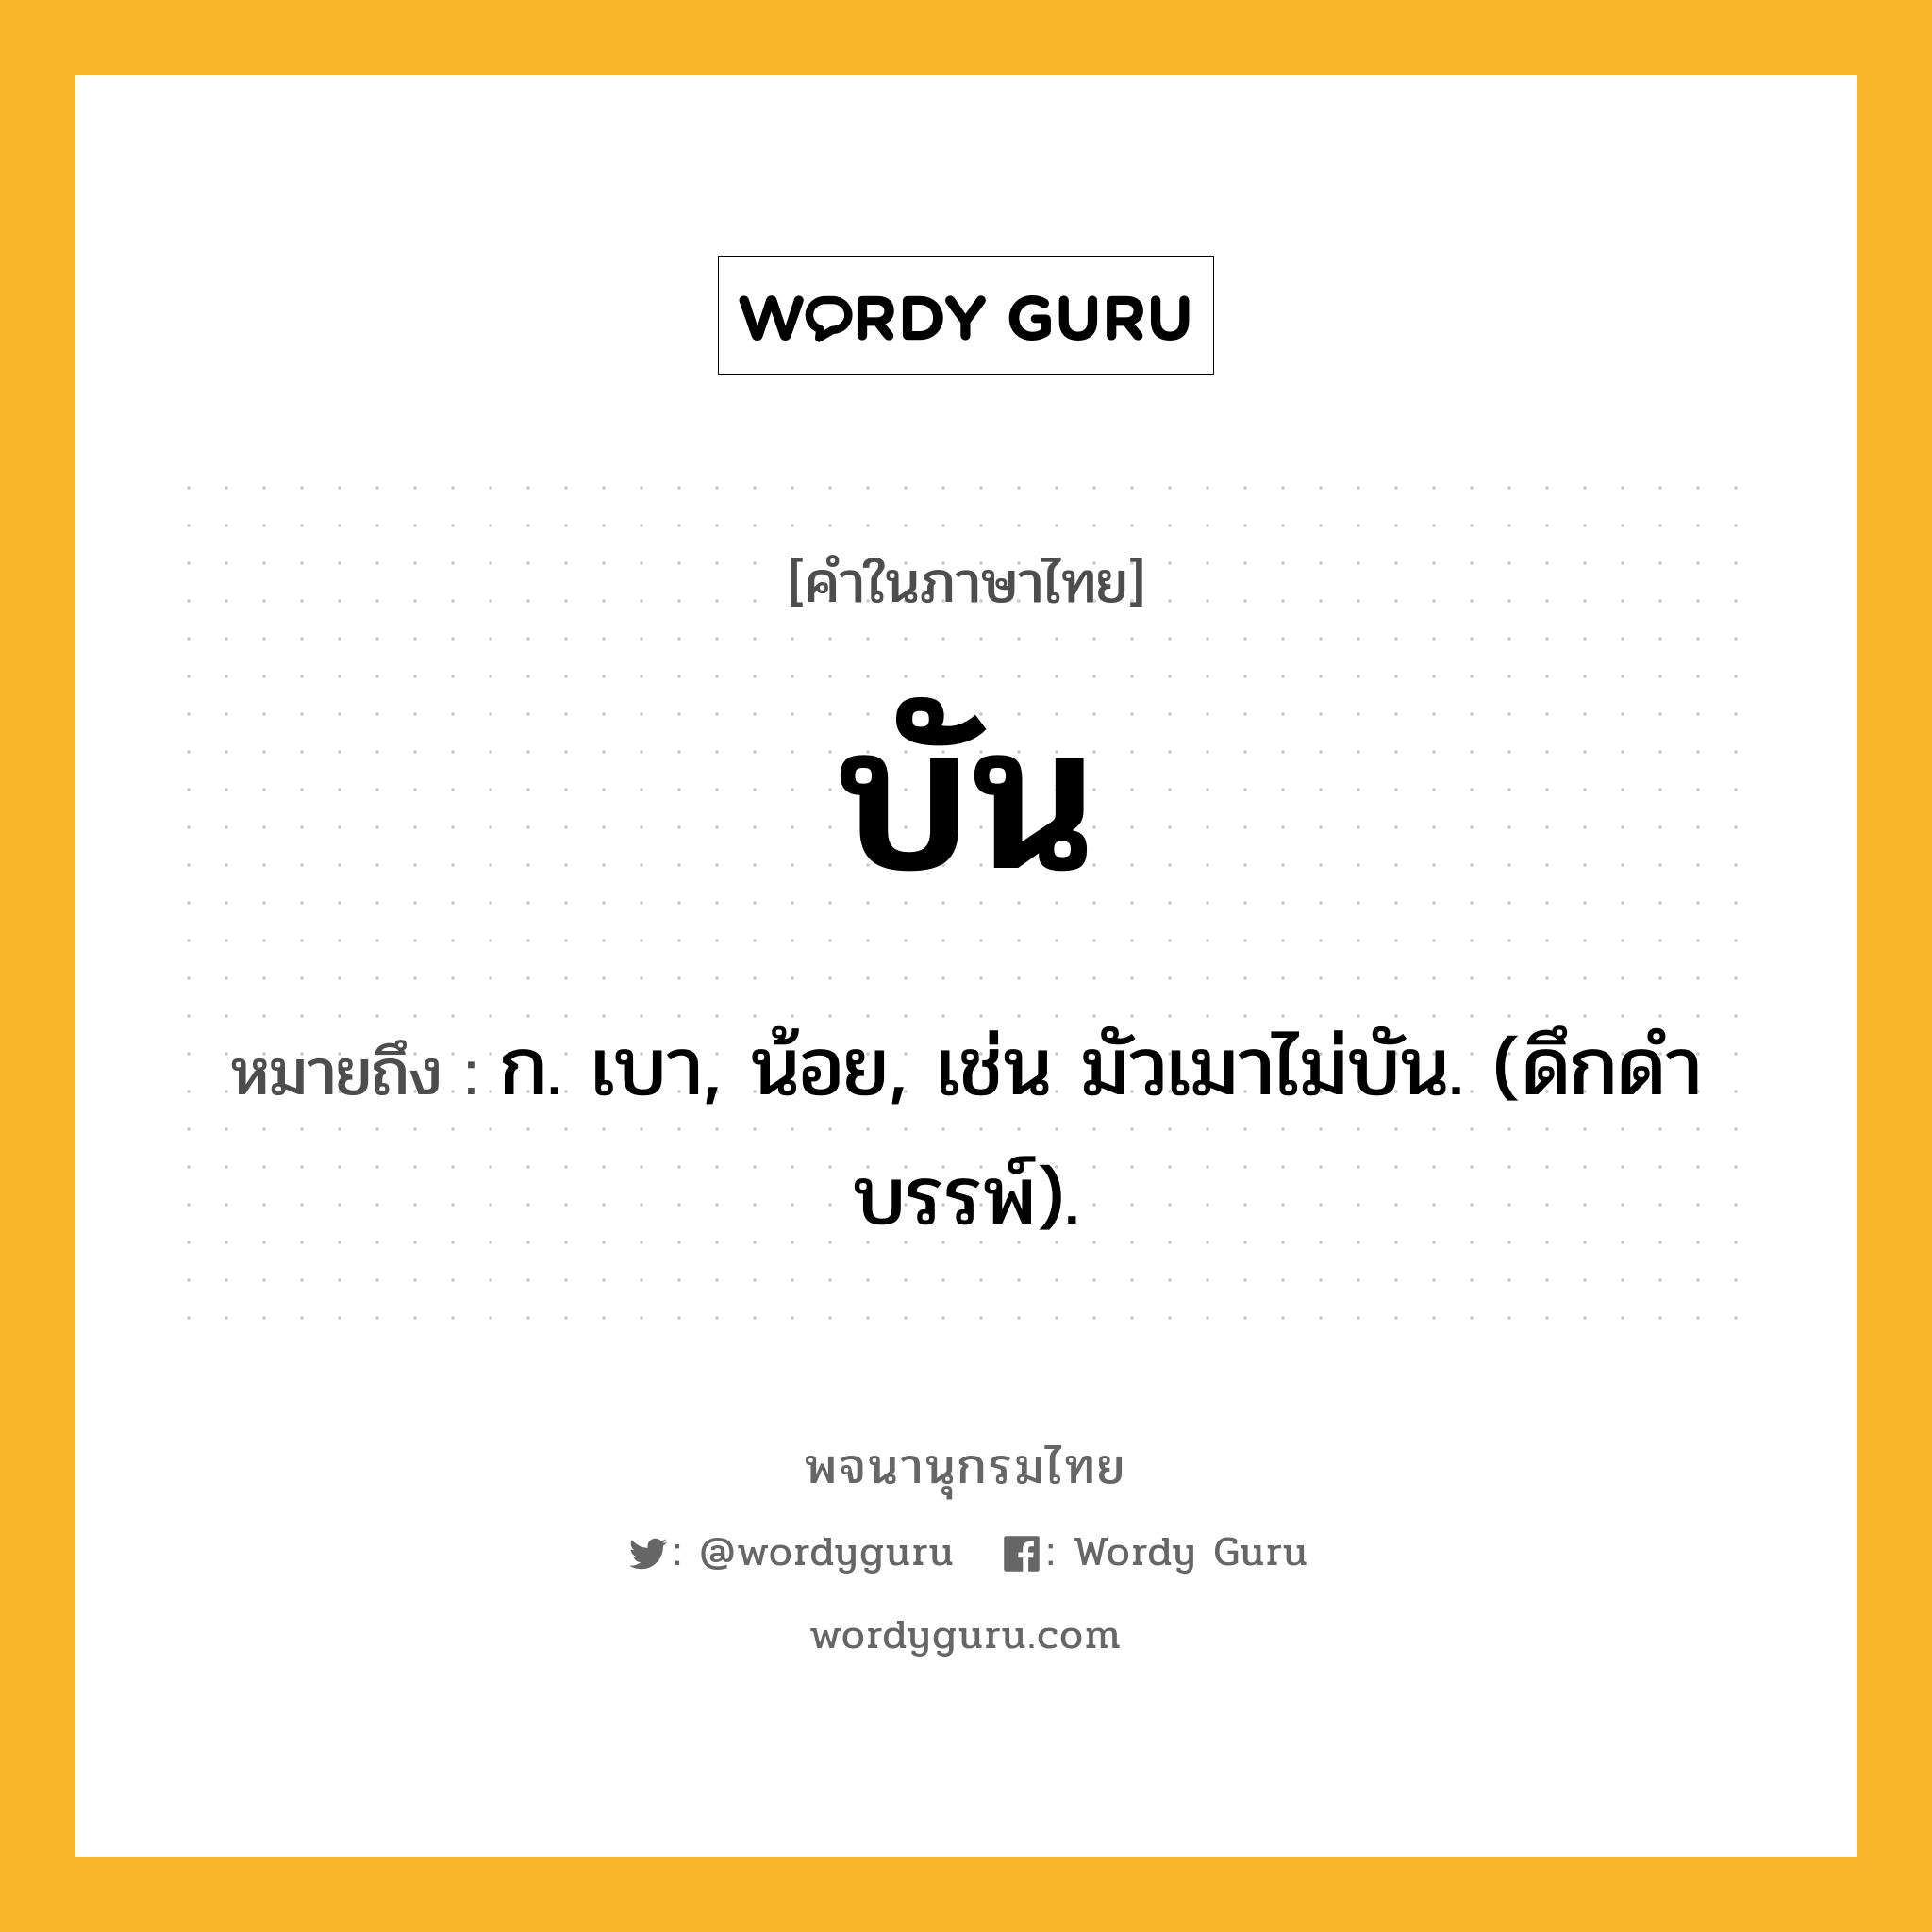 บัน ความหมาย หมายถึงอะไร?, คำในภาษาไทย บัน หมายถึง ก. เบา, น้อย, เช่น มัวเมาไม่บัน. (ดึกดําบรรพ์).